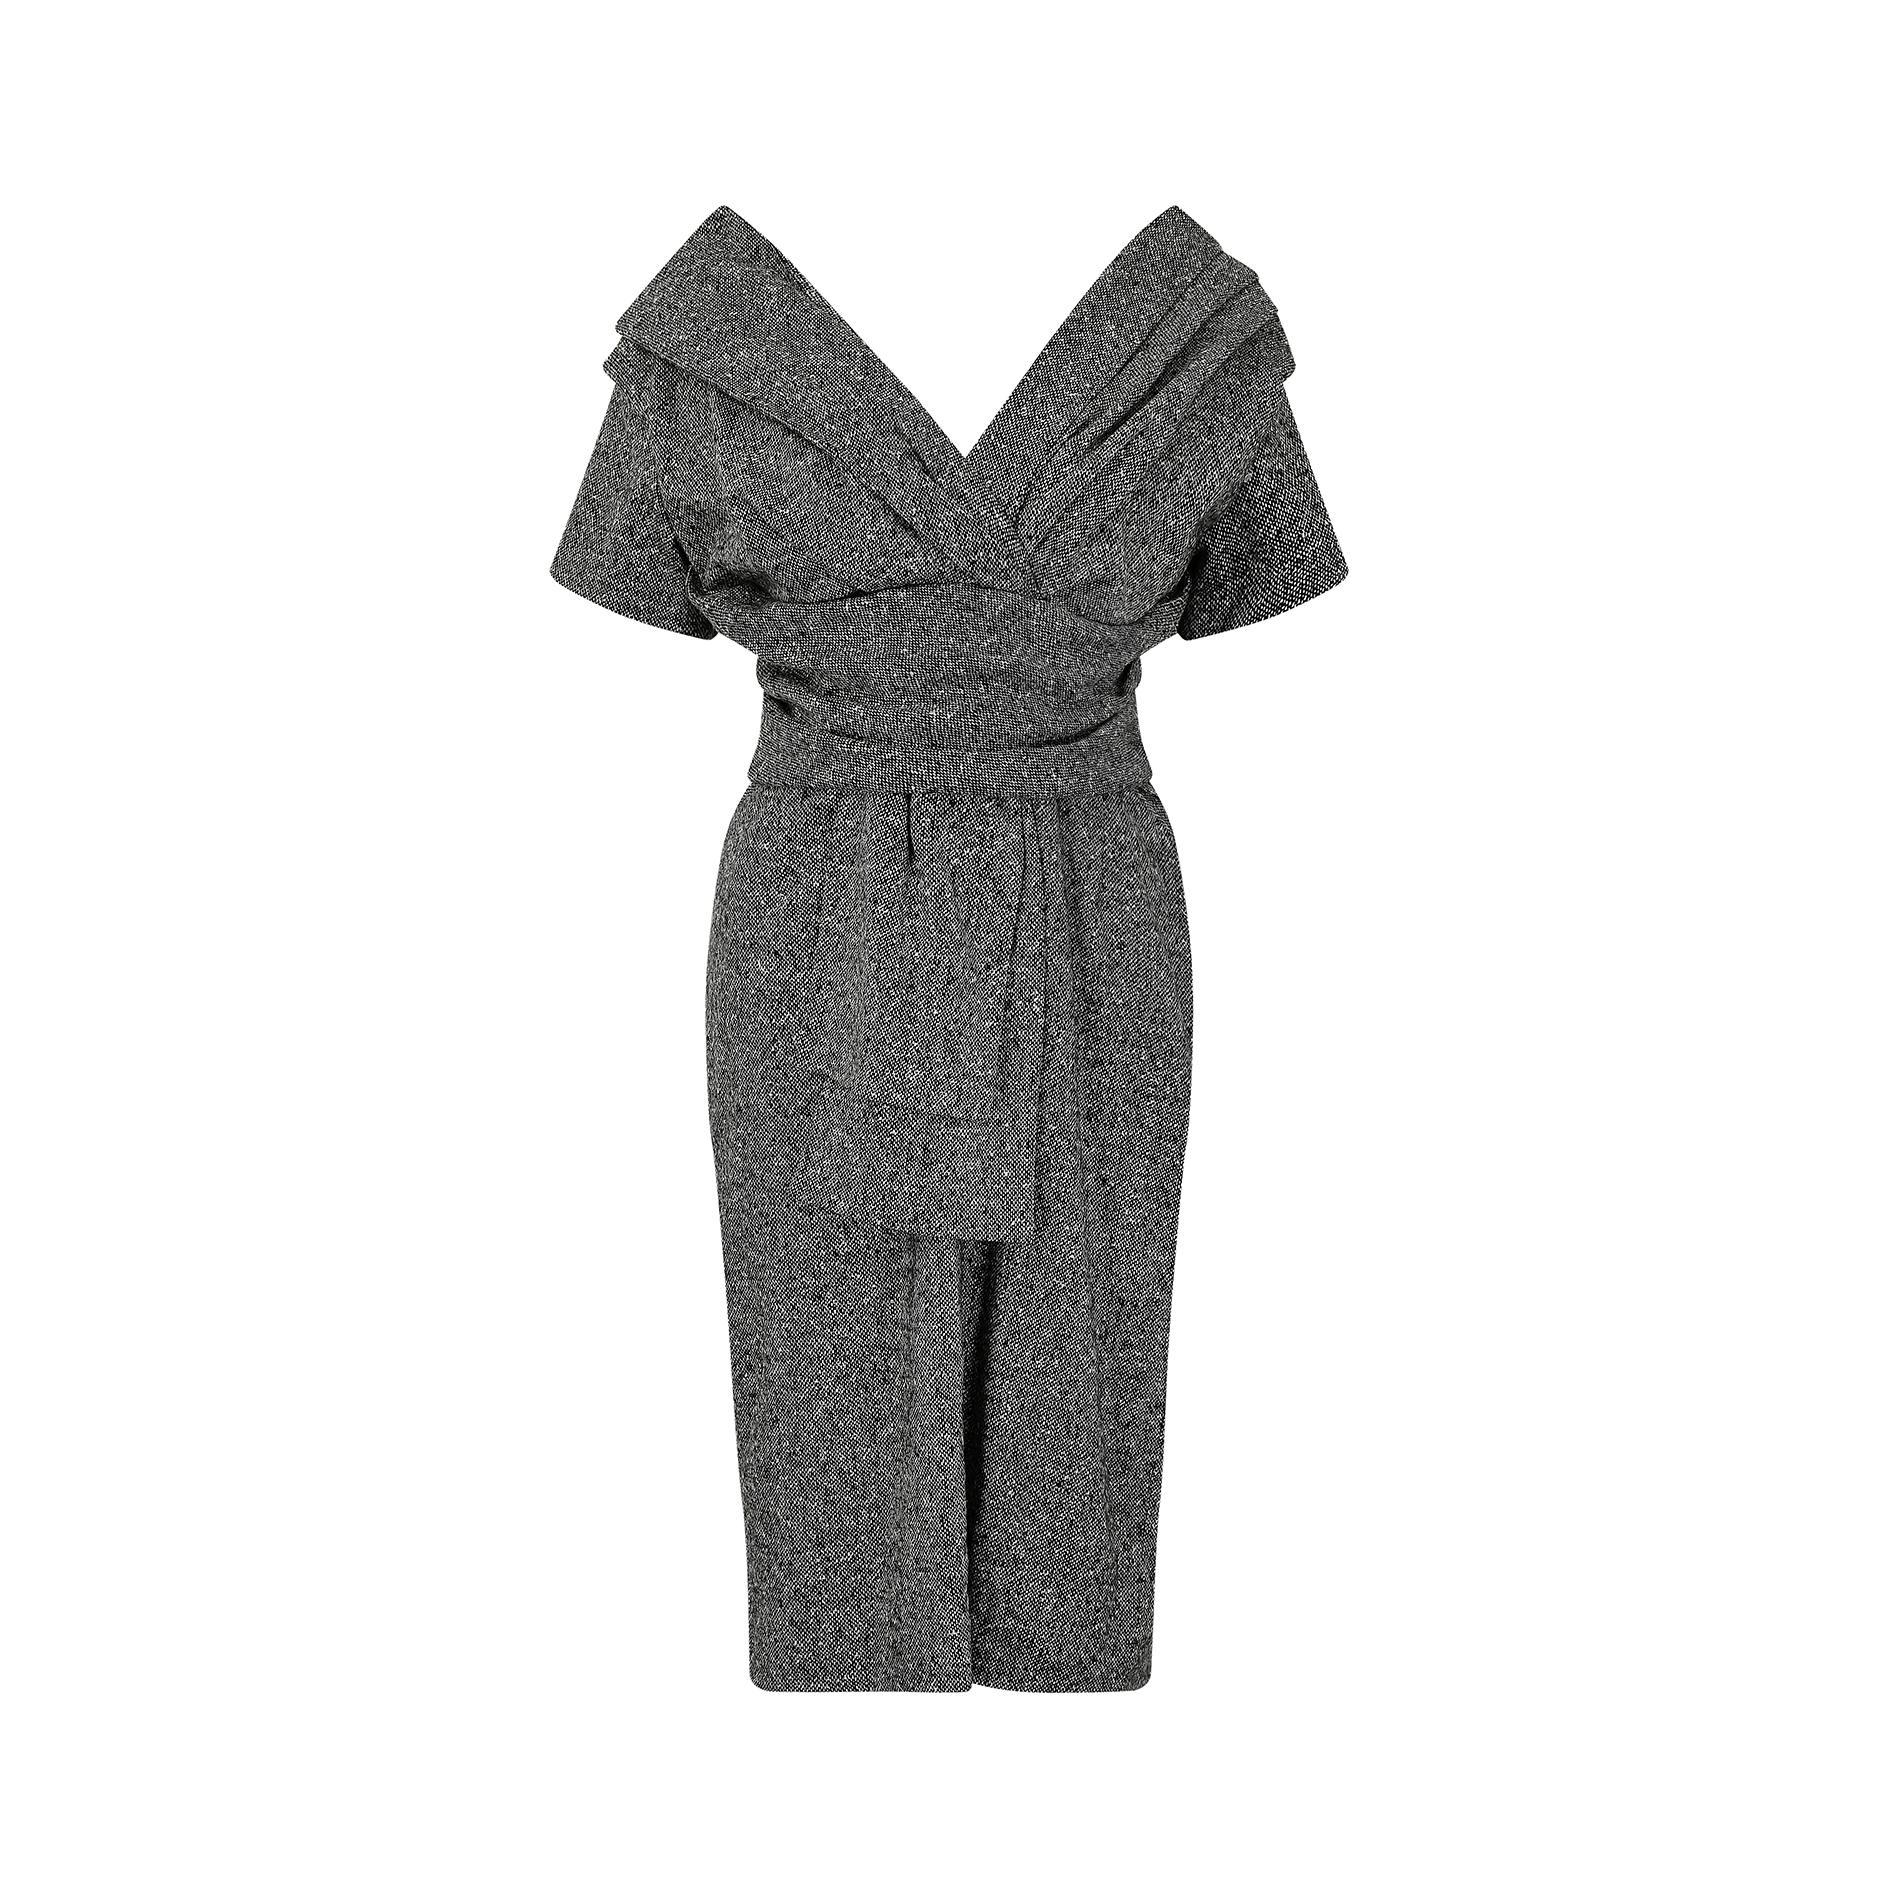 Cette fabuleuse robe en tweed gris Christian Dior est issue de la collection automne/hiver 2007, juste après que le jeune John Galliano a quitté Givenchy pour devenir directeur de la création, annonçant ainsi une nouvelle ère éblouissante pour la